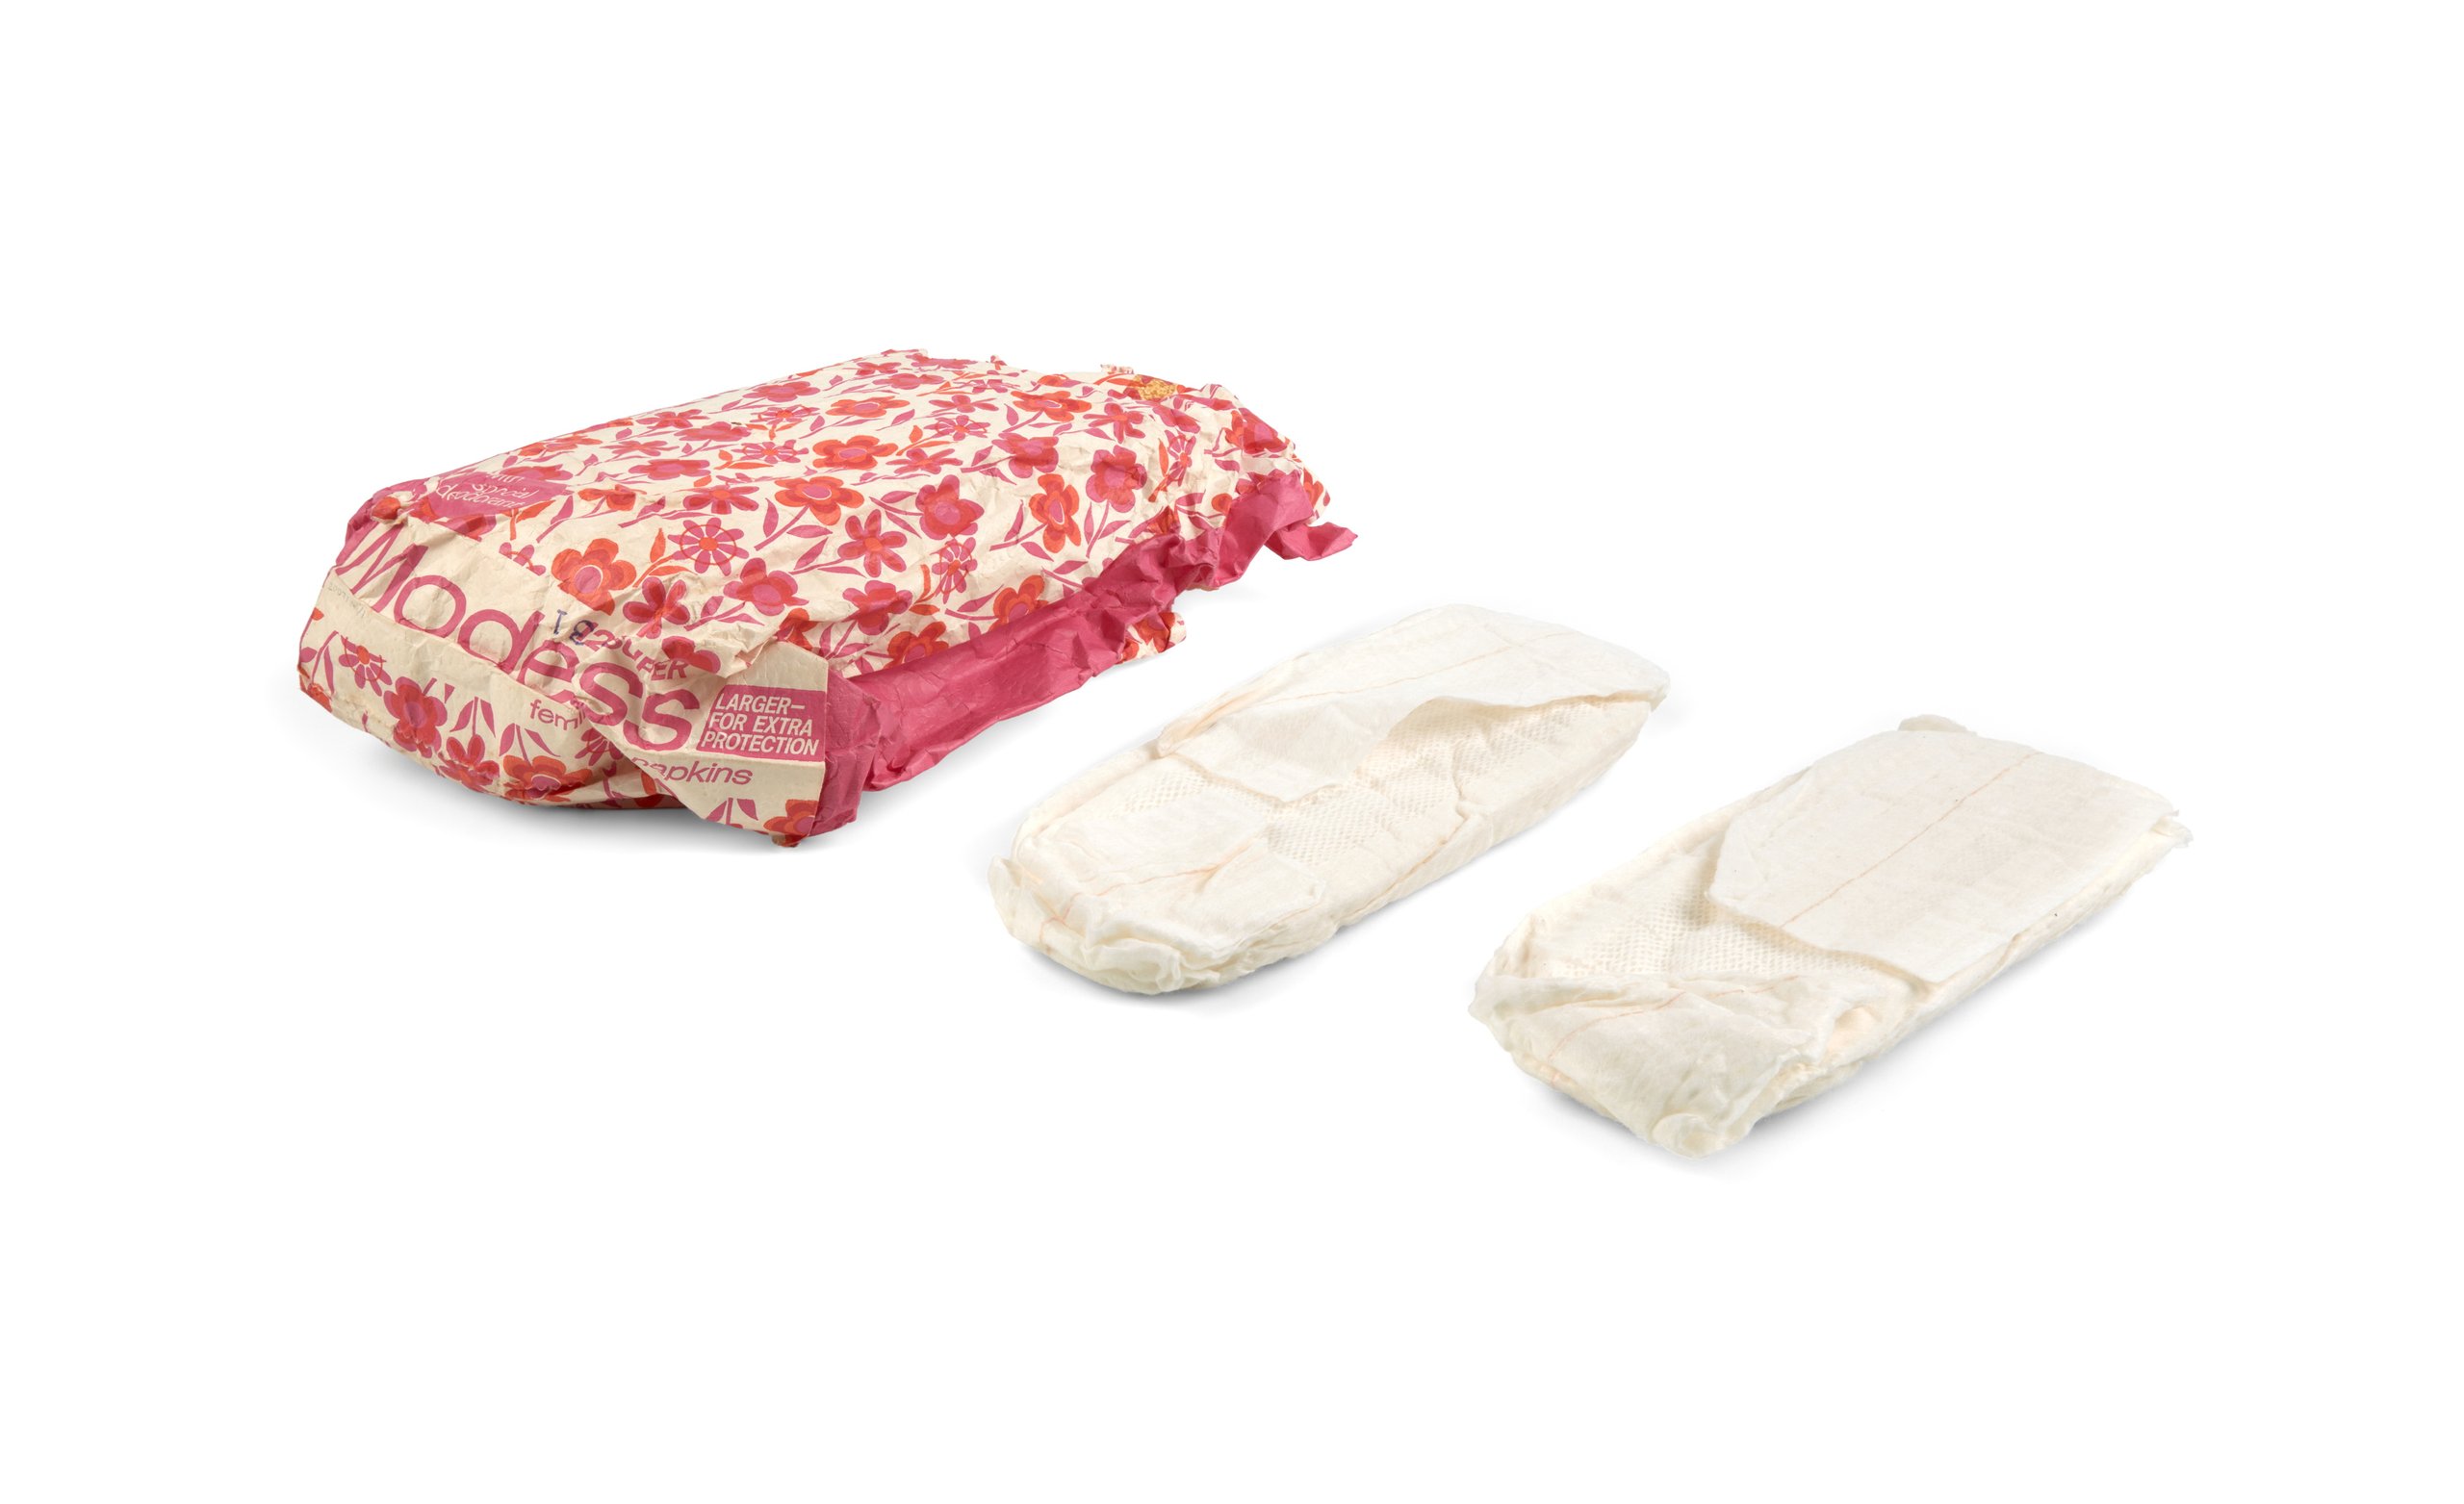 Sanitary pads in packaging